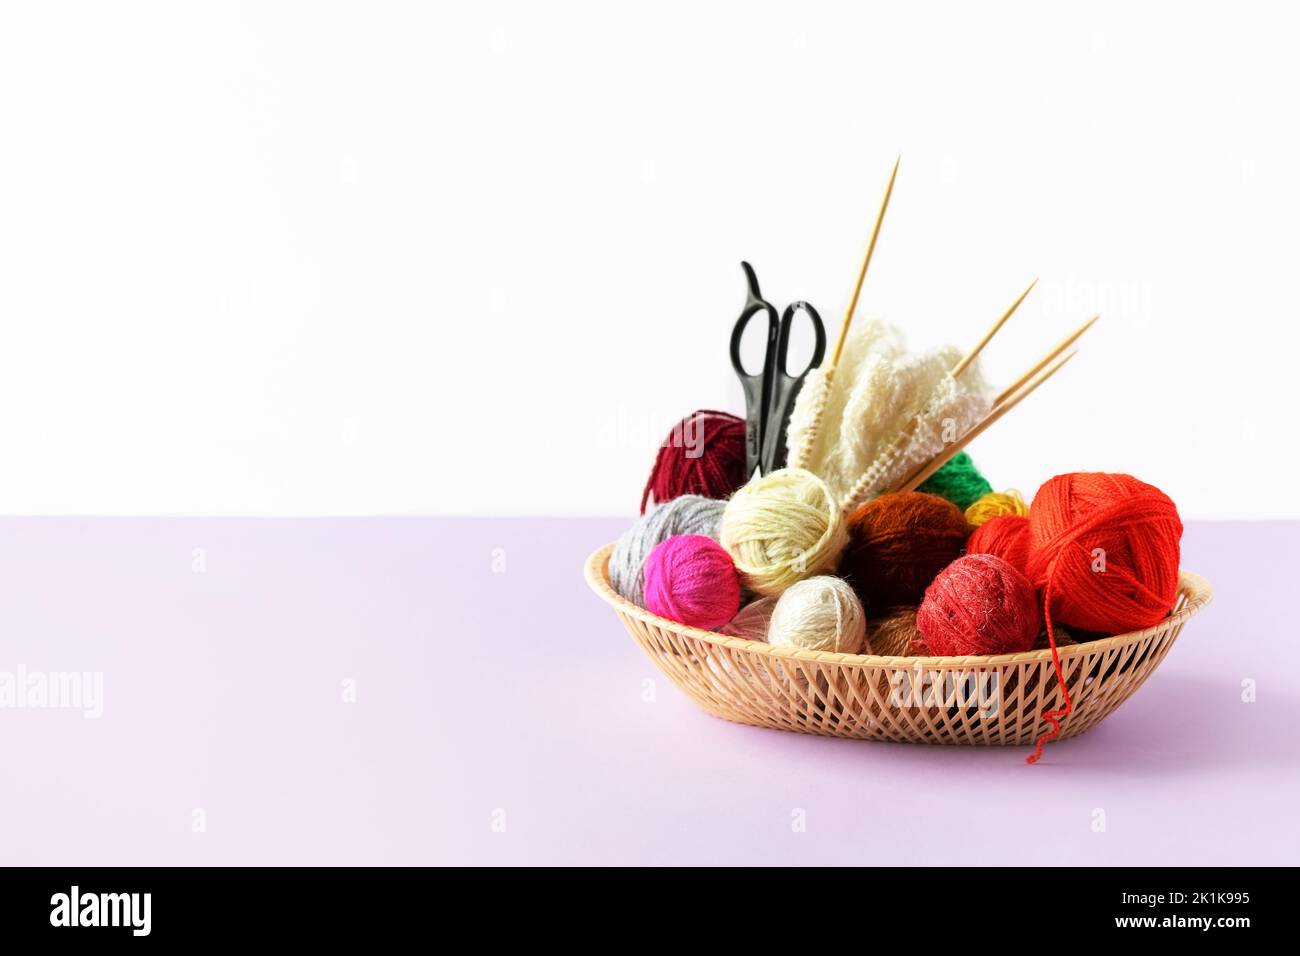 Rouge, jaune, blanc, violet, marron, boules vertes de fil dans un panier beige avec aiguilles à tricoter en bambou et ciseaux sur fond lilas Banque D'Images